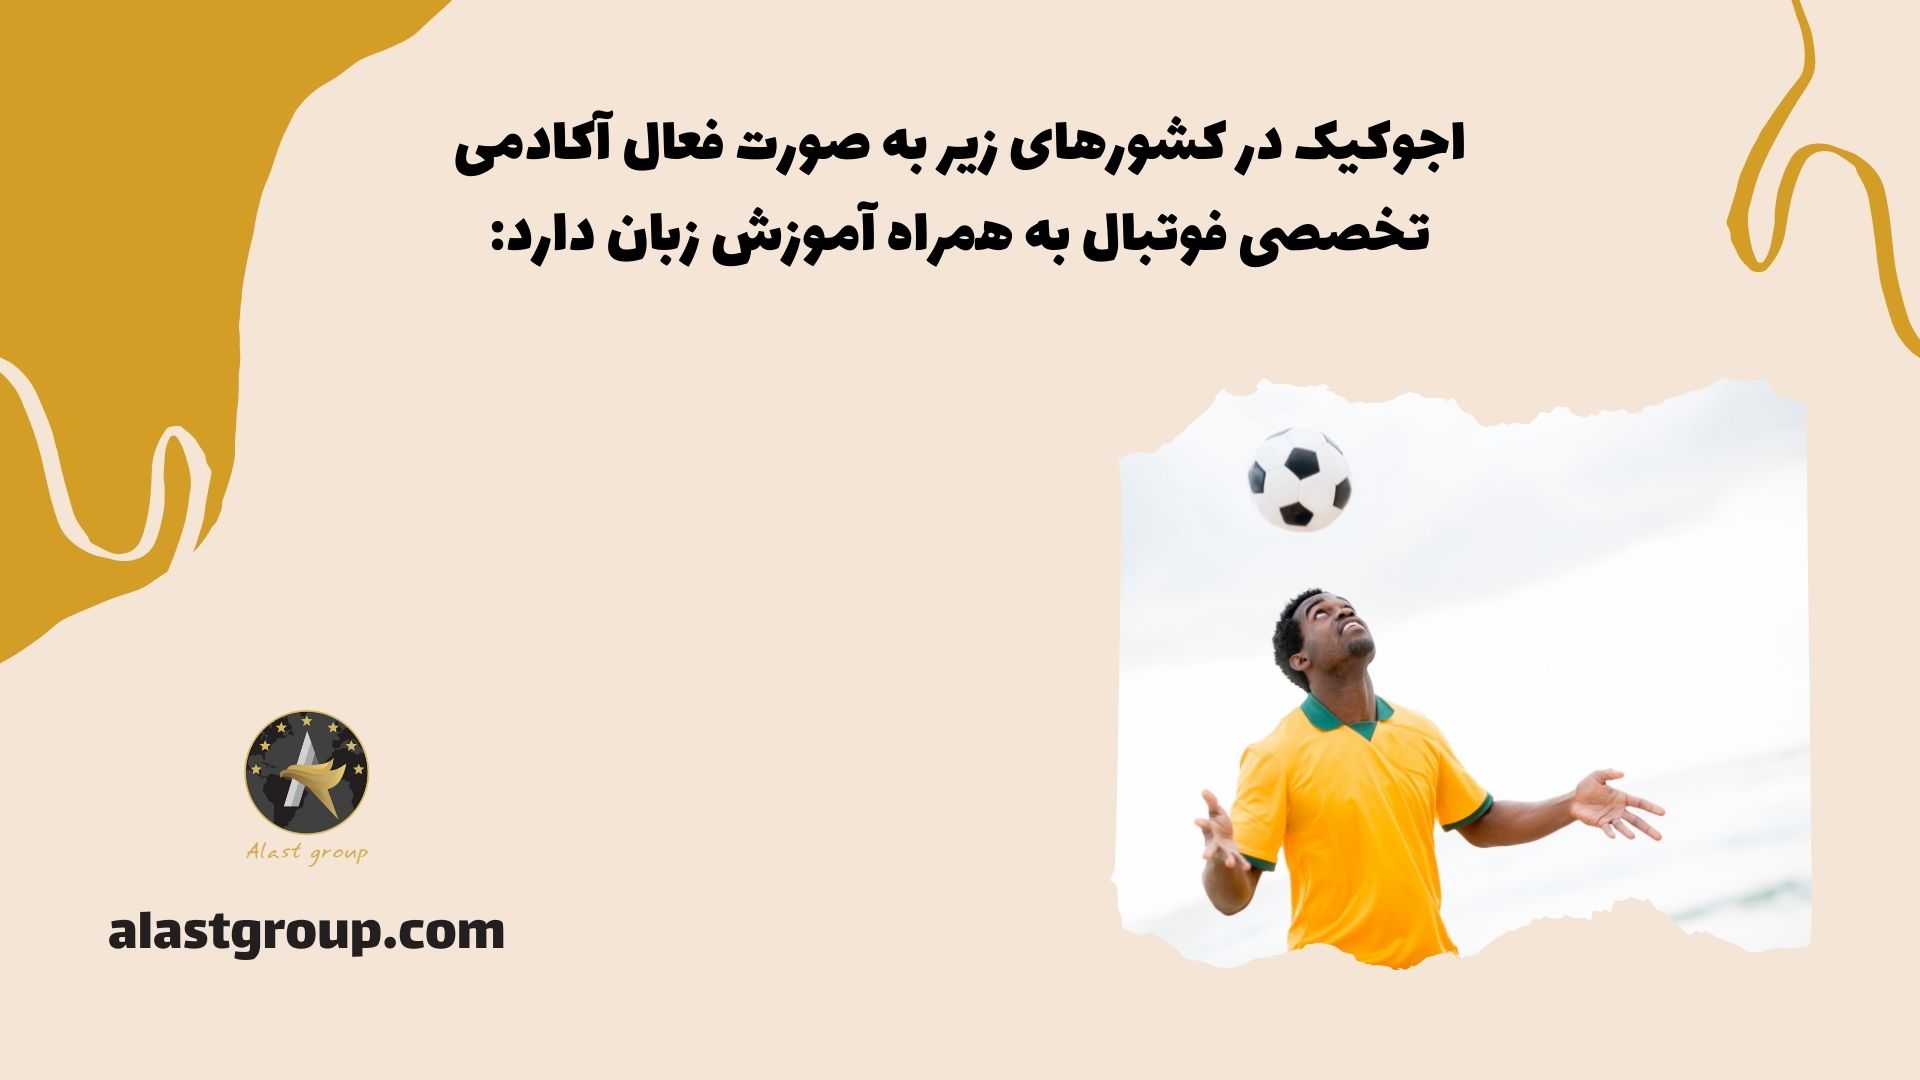 اجوکیک در کشورهای زیر به صورت فعال آکادمی تخصصی فوتبال به همراه آموزش زبان دارد: